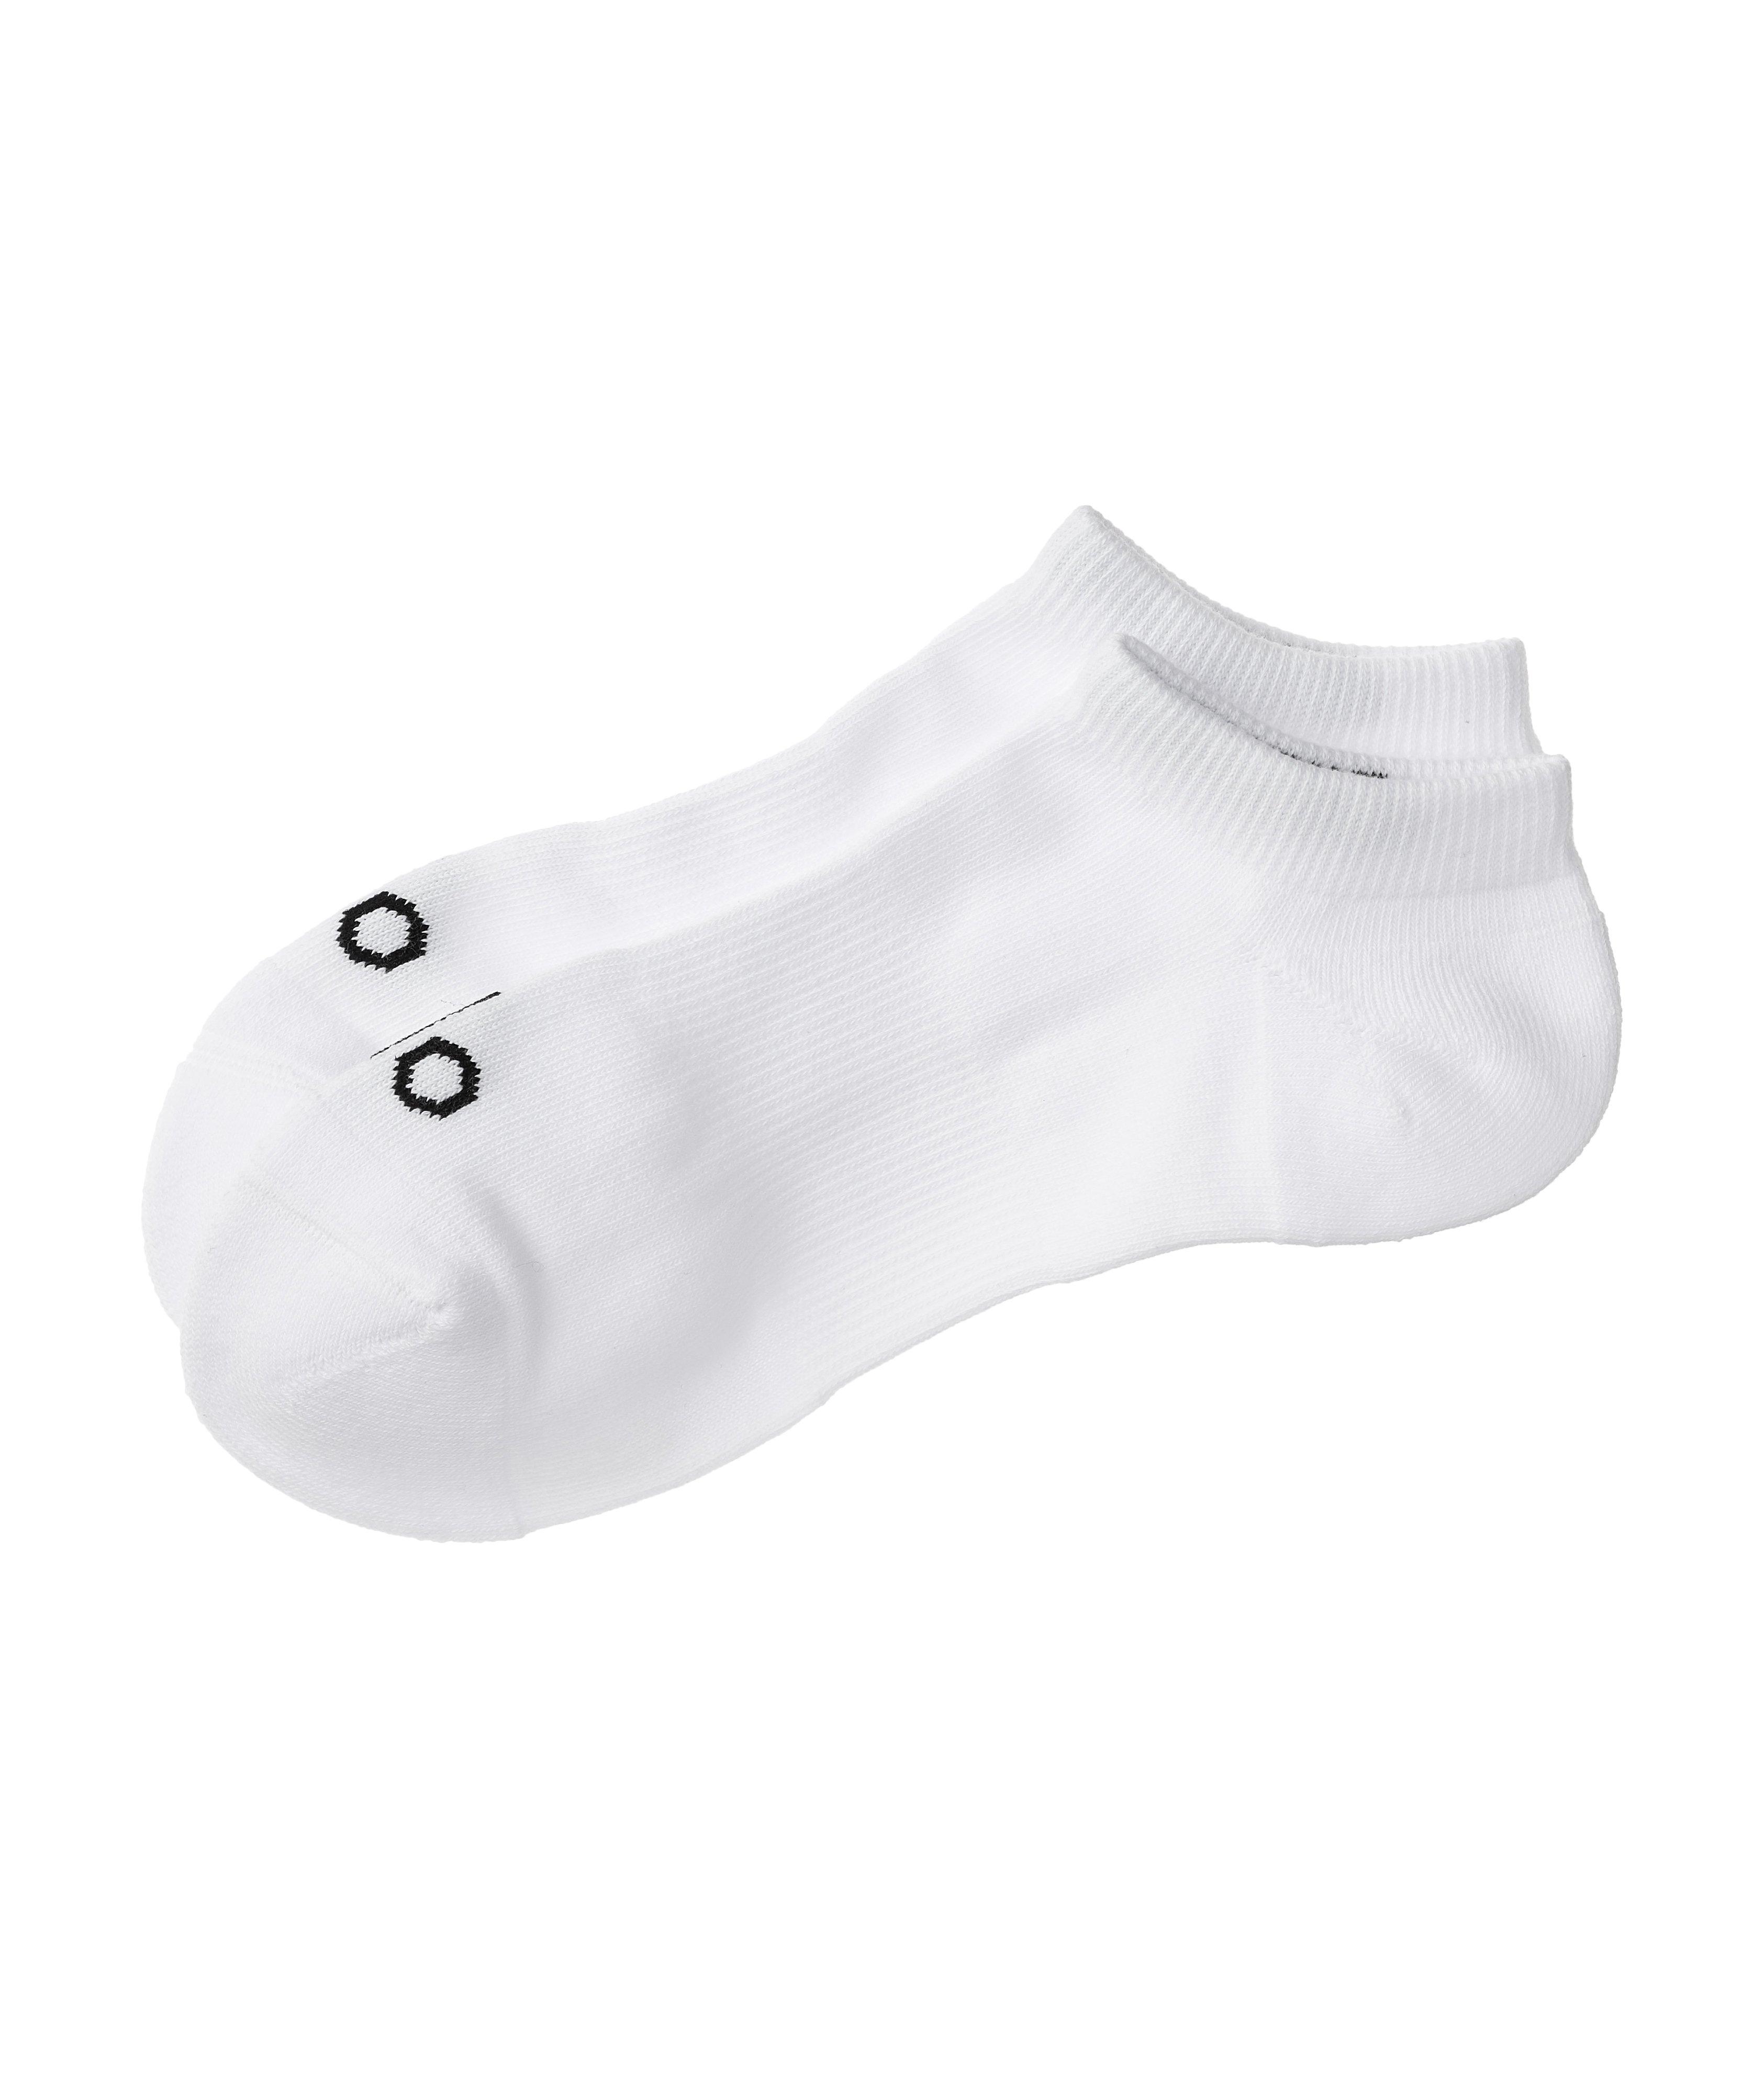 Cotton-Blend Ankle Socks image 0